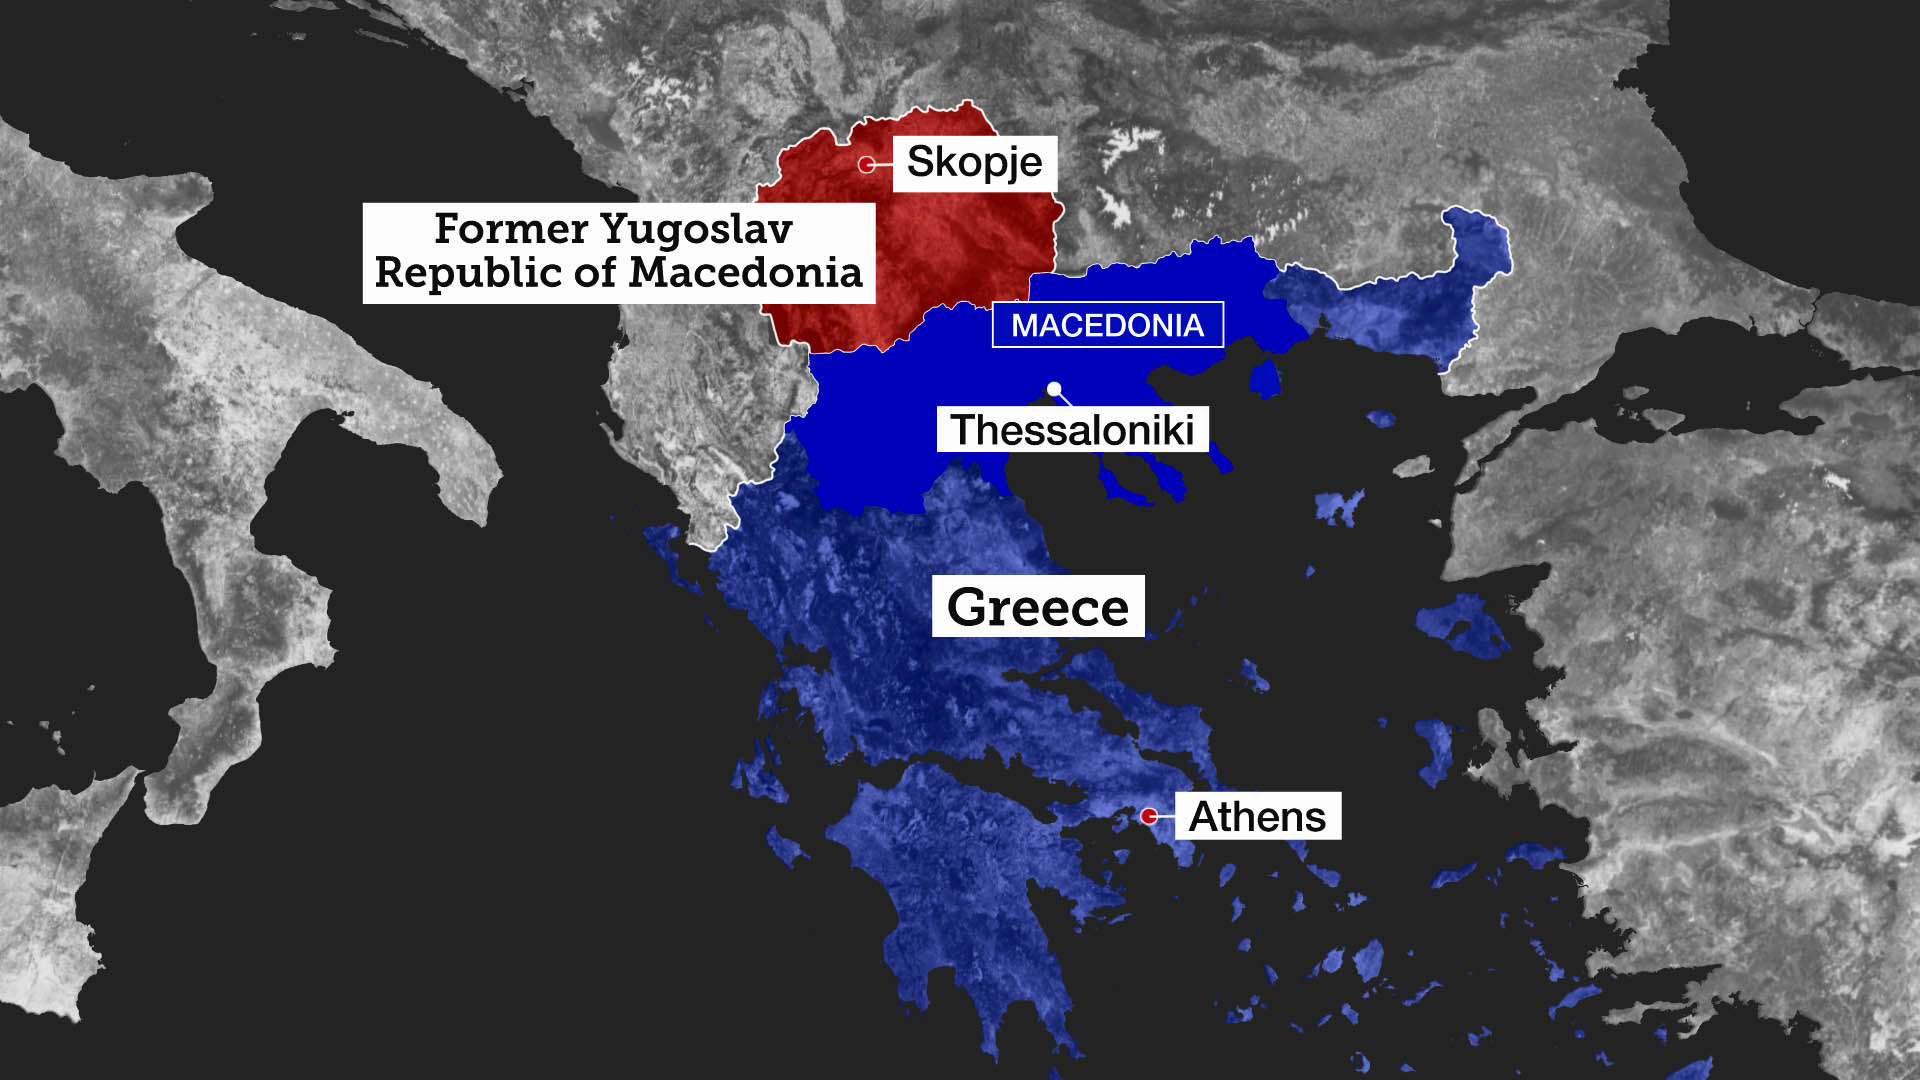 ÃŽâ€˜Ãâ‚¬ÃŽÂ¿Ãâ€žÃŽÂ­ÃŽÂ»ÃŽÂµÃÆ’ÃŽÂ¼ÃŽÂ± ÃŽÂµÃŽÂ¹ÃŽÂºÃÅ’ÃŽÂ½ÃŽÂ±Ãâ€š ÃŽÂ³ÃŽÂ¹ÃŽÂ± greece and republic of macedonia map